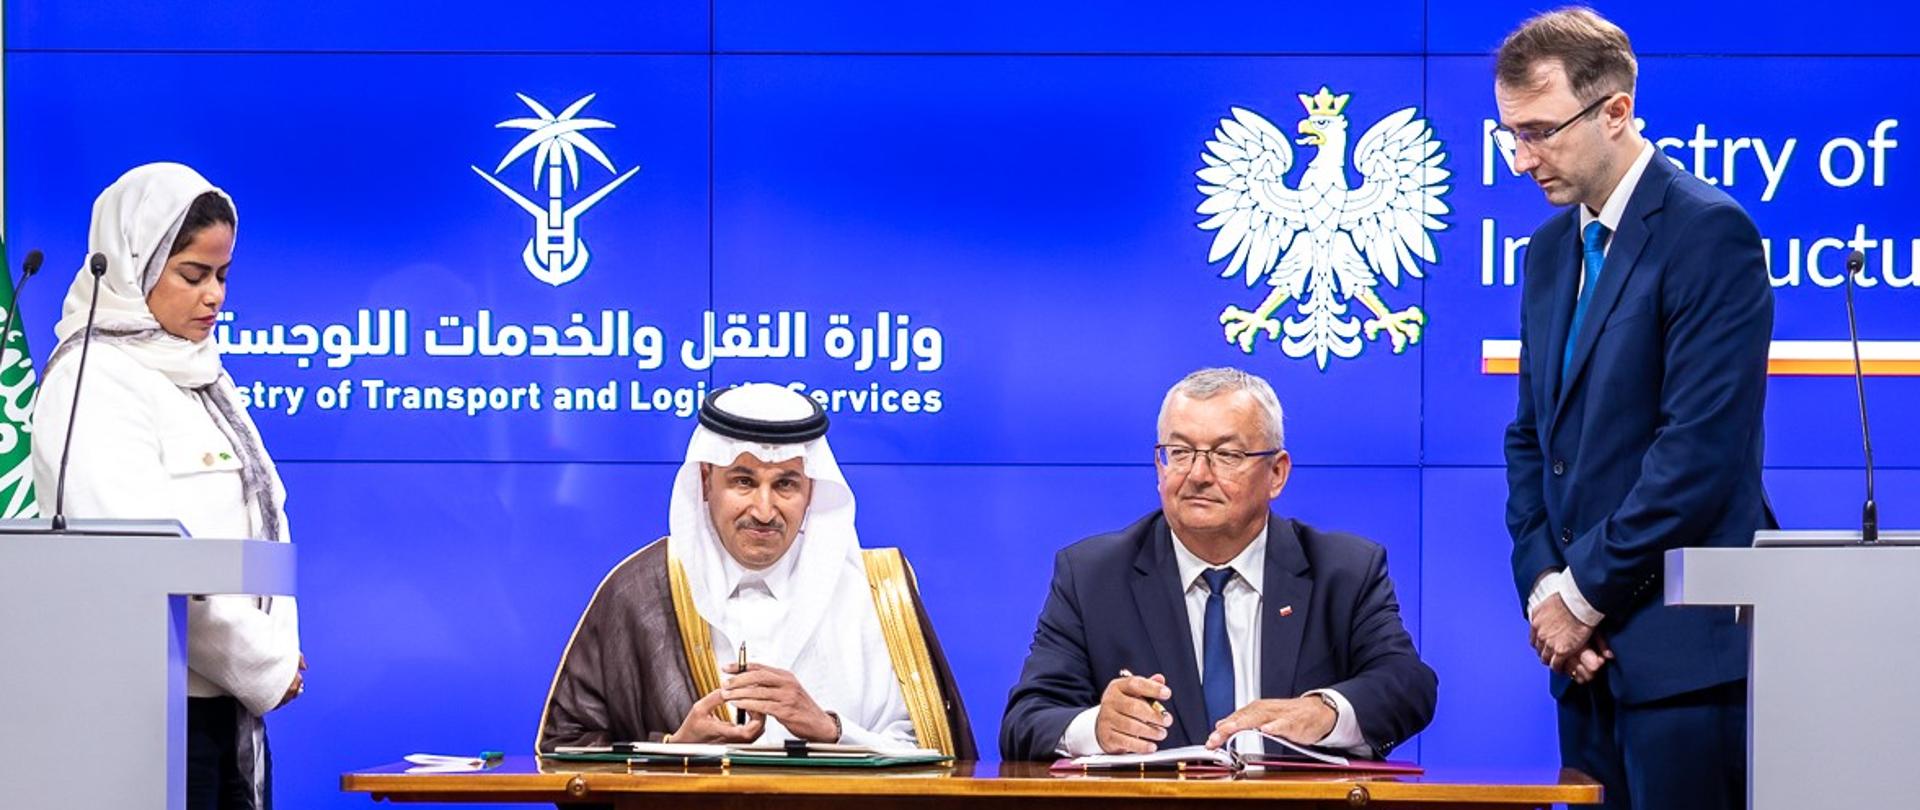 Minister infrastruktury Andrzej Adamczyk wraz ze swoim saudyjskim odpowiednikiem Salehem Al-Jasserem w trakcie podpisywania umowy o komunikacji lotniczej między oboma państwami